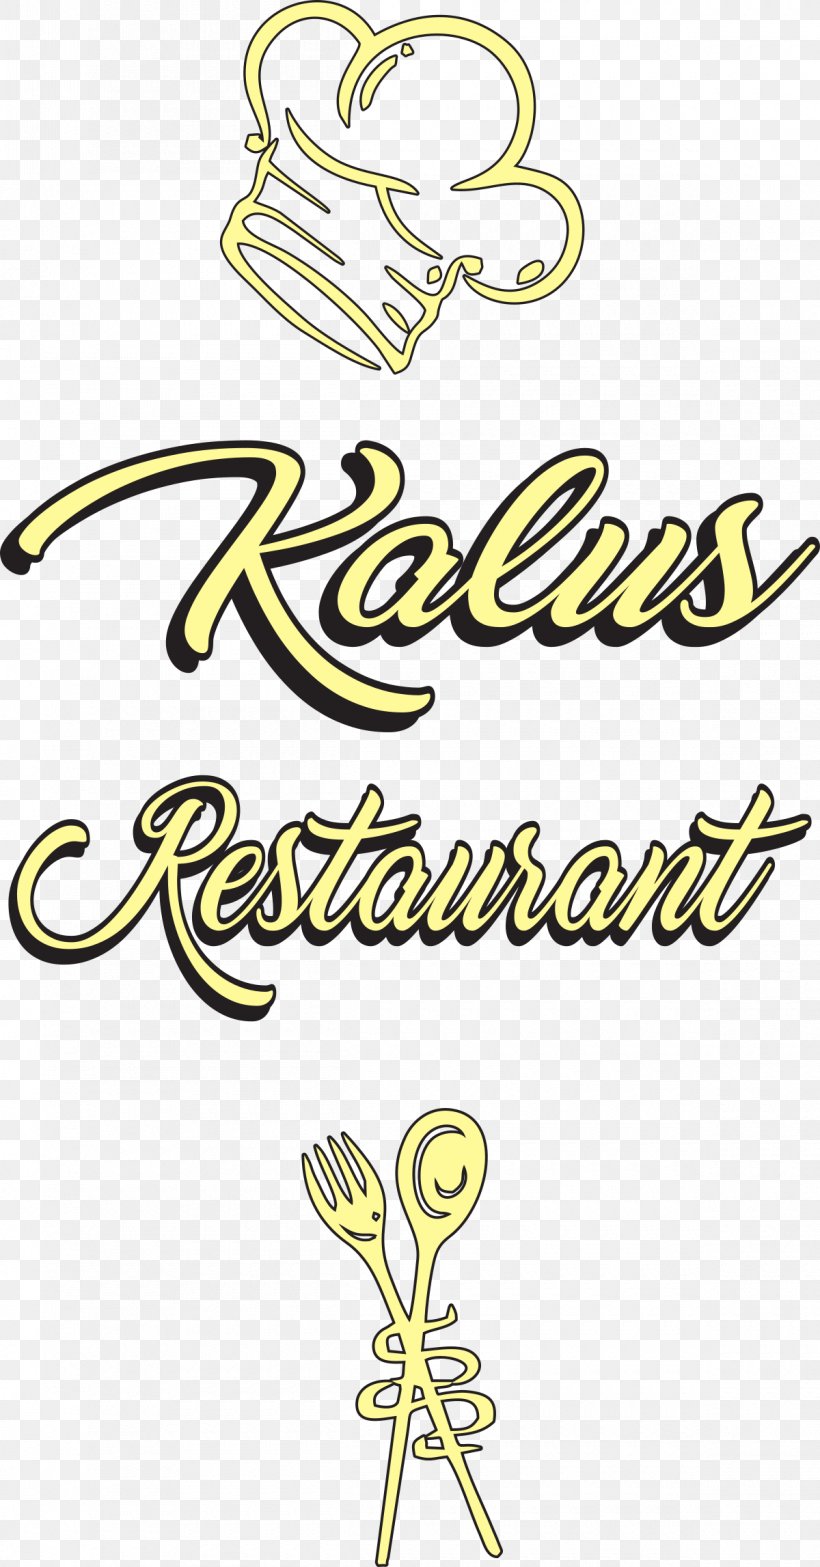 Kalus Restaurant Kitchen Cabinet Durchreiche Archiveprocess, PNG, 1200x2294px, Kitchen, Area, Art, Berlin, Brand Download Free